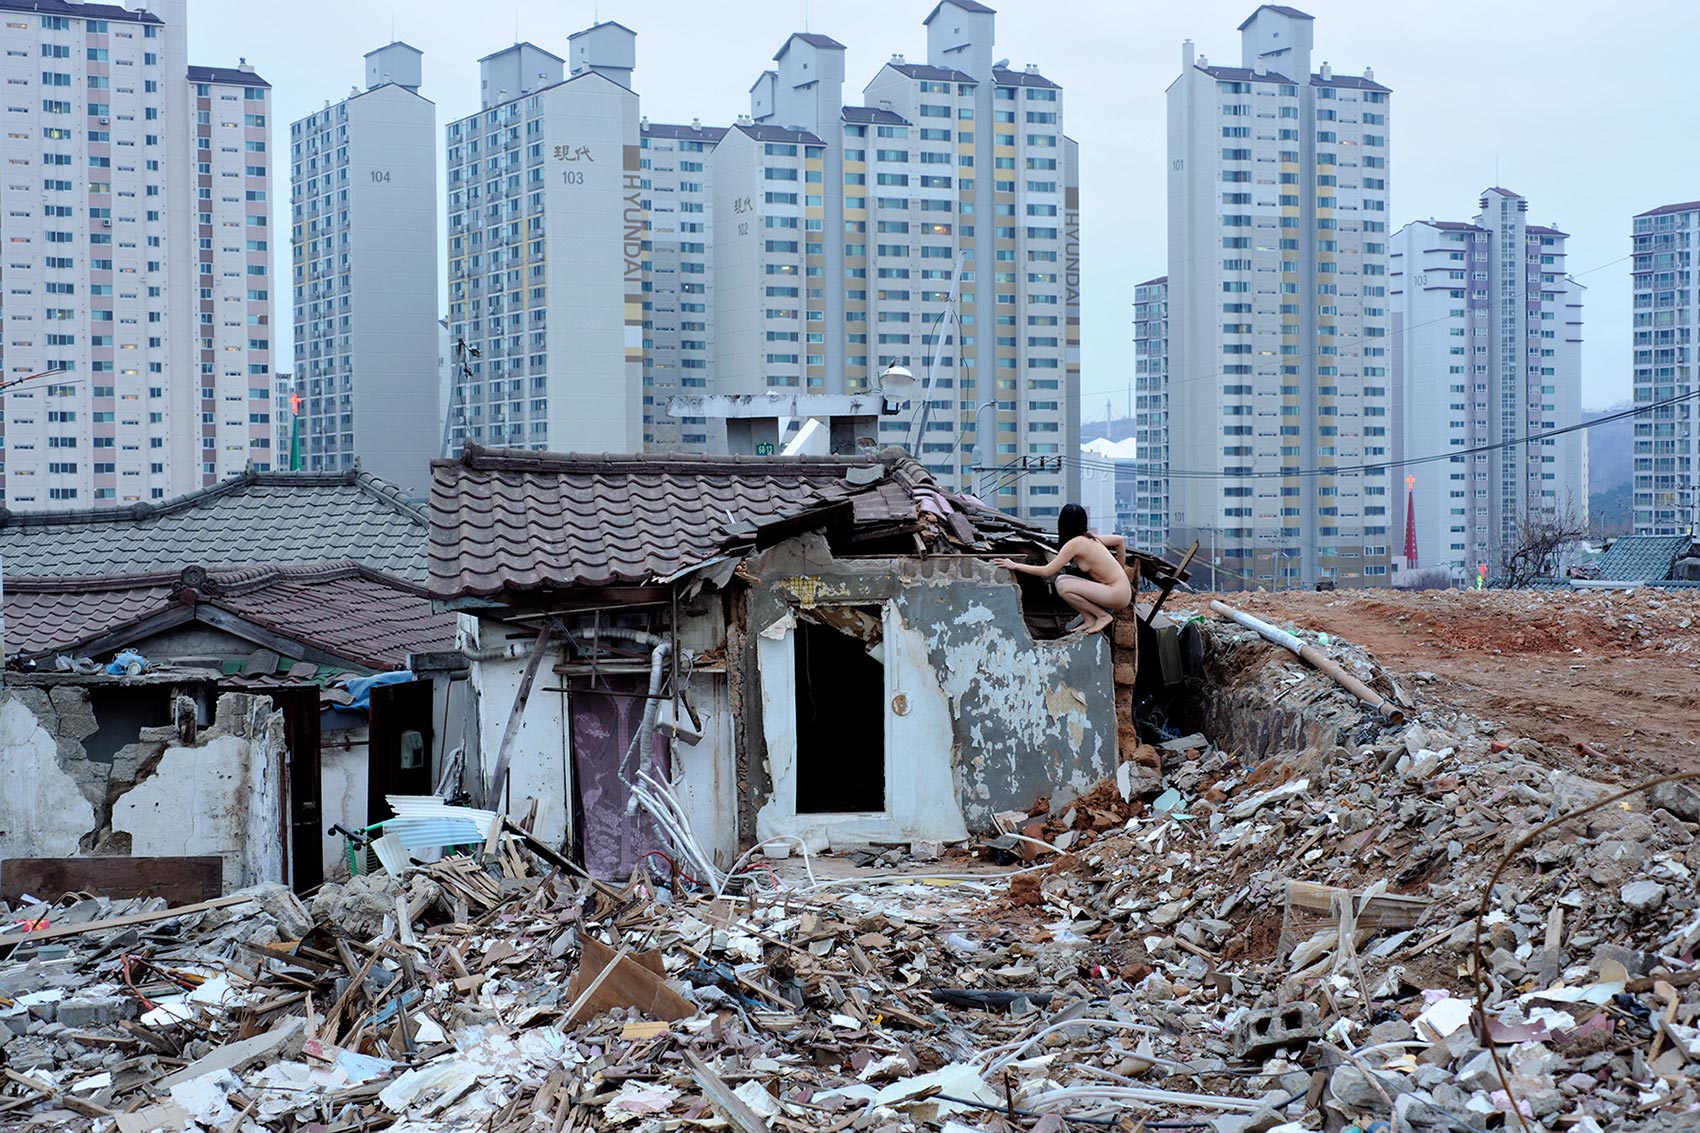 Demolition Zone, Moraenae, Seoul, Korea 